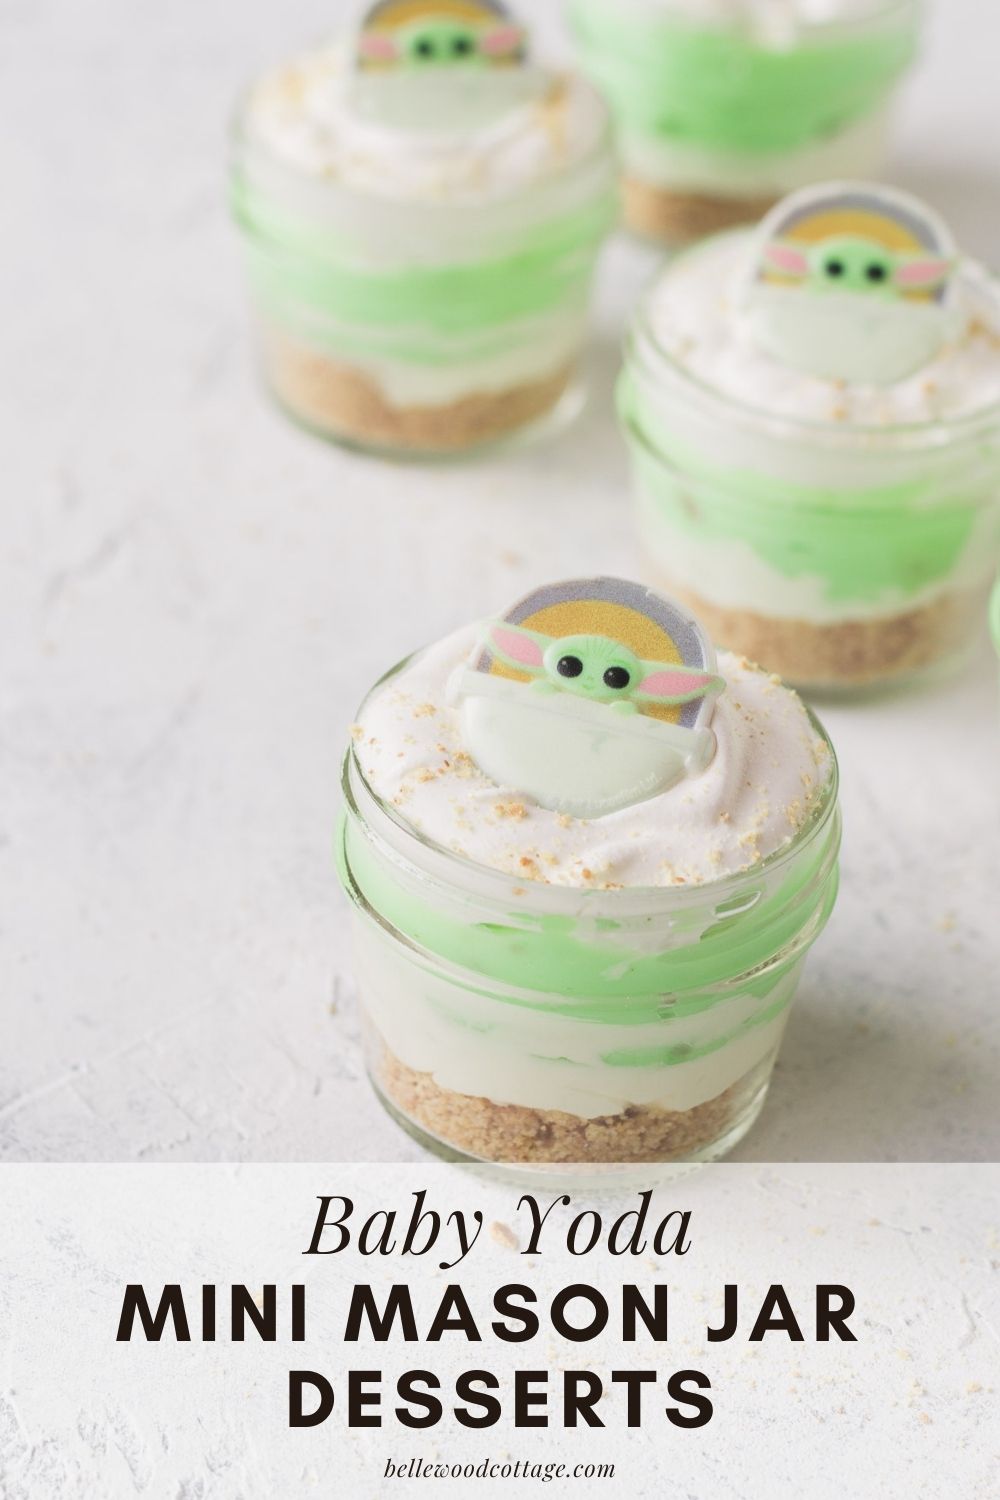 Baby Yoda MIni Mason Jar Desserts